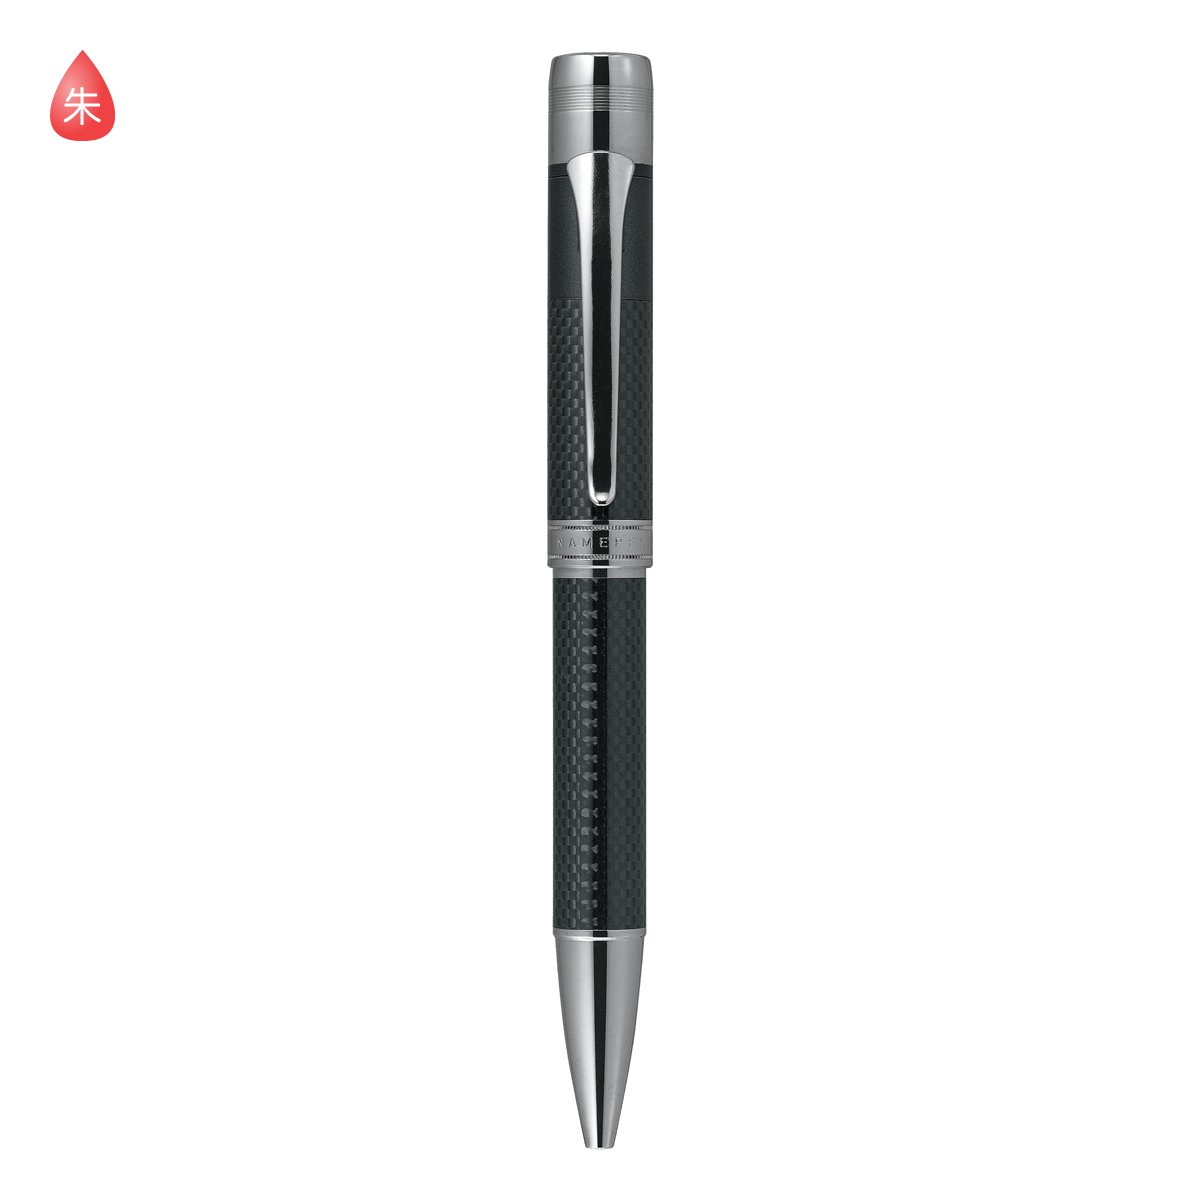 シャチハタ ネームペン パーカー カーボネックス ボールペン 本体色 オールブラック ネームペン用ネームx Gps インク色 朱 既製品 Shachihata Xstamper Carbonex Tks Cx3 X Gps コード